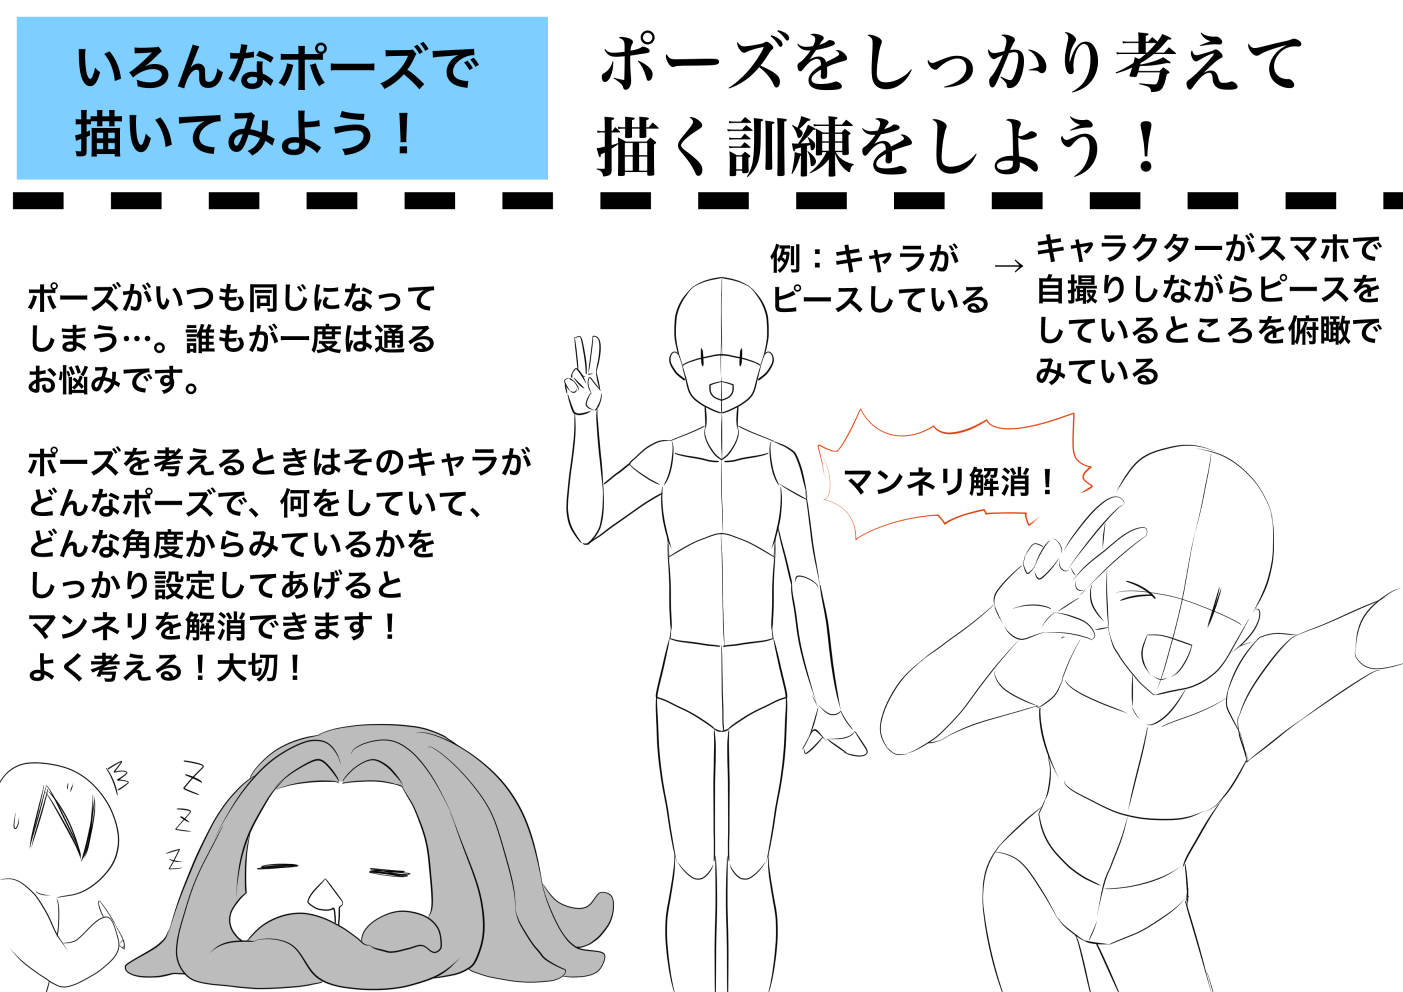 代々木アニメーション学院 東京校 池袋校 イラスト科 自宅で出来る イラスト練習法 いろんなポーズでキャラクターを描いてみよう いつも同じポーズ そんなお悩みありますよね ちょっとした解決方法を掲載 ぜひ練習してみてね 代アニ